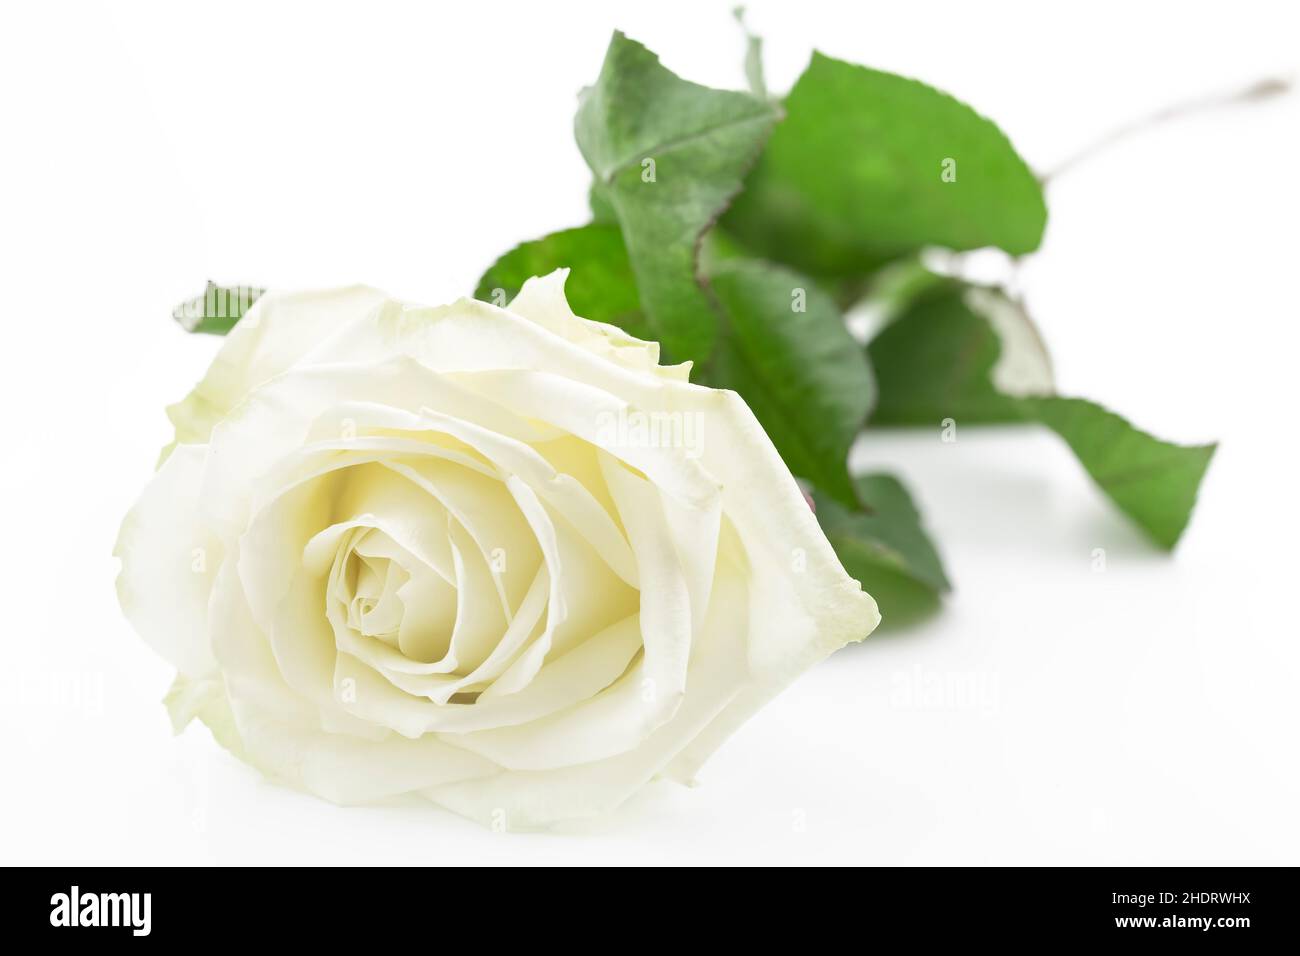 rose petals, white rose, rose petal, white roses Stock Photo